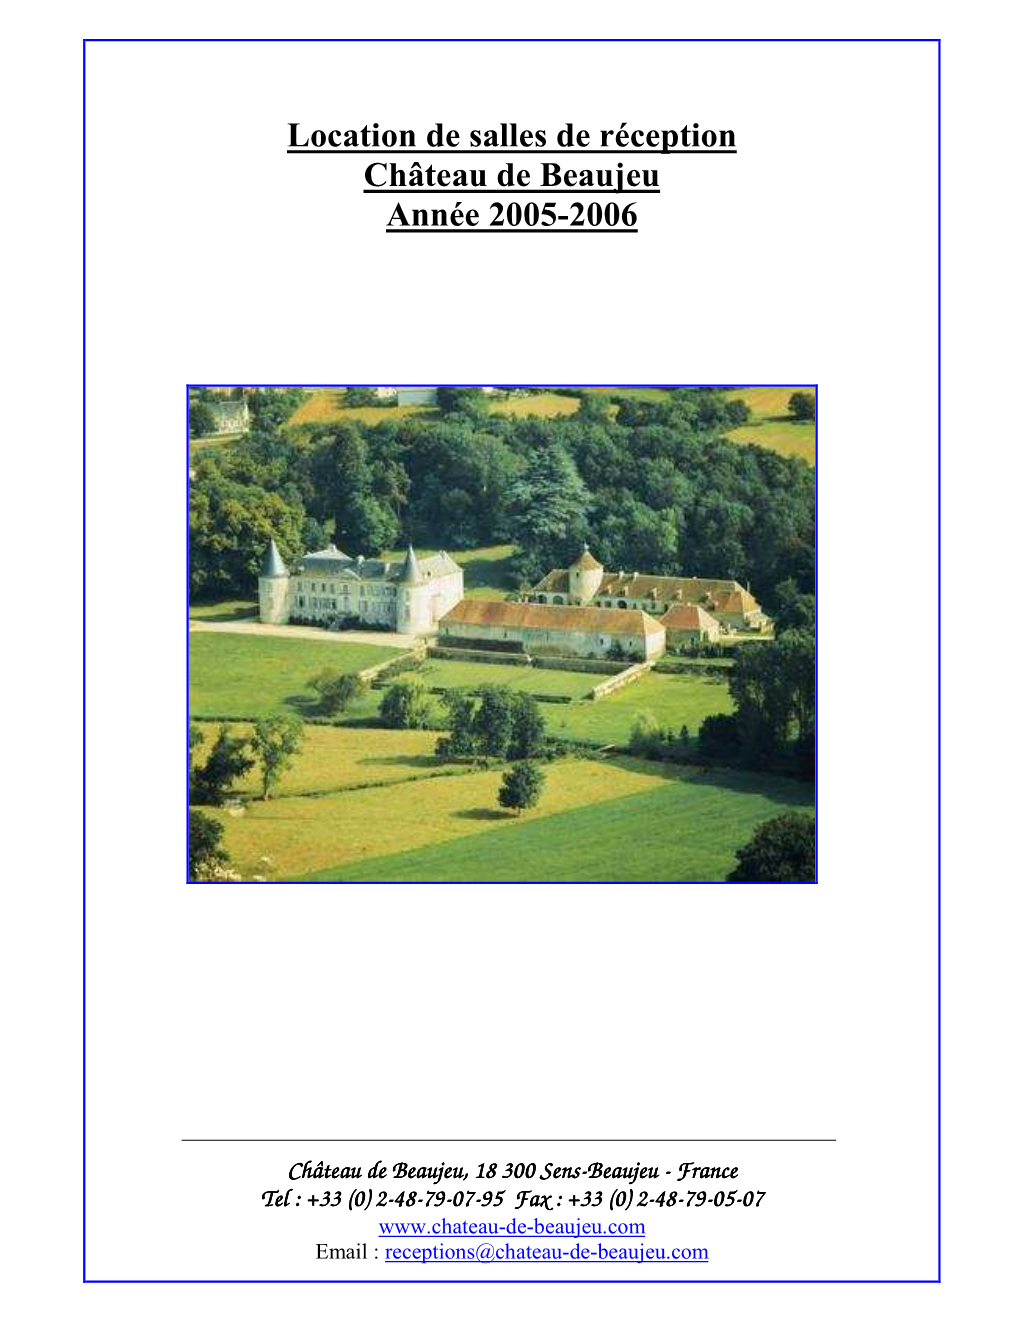 Location De Salles De Réception Château De Beaujeu Année 2005-2006